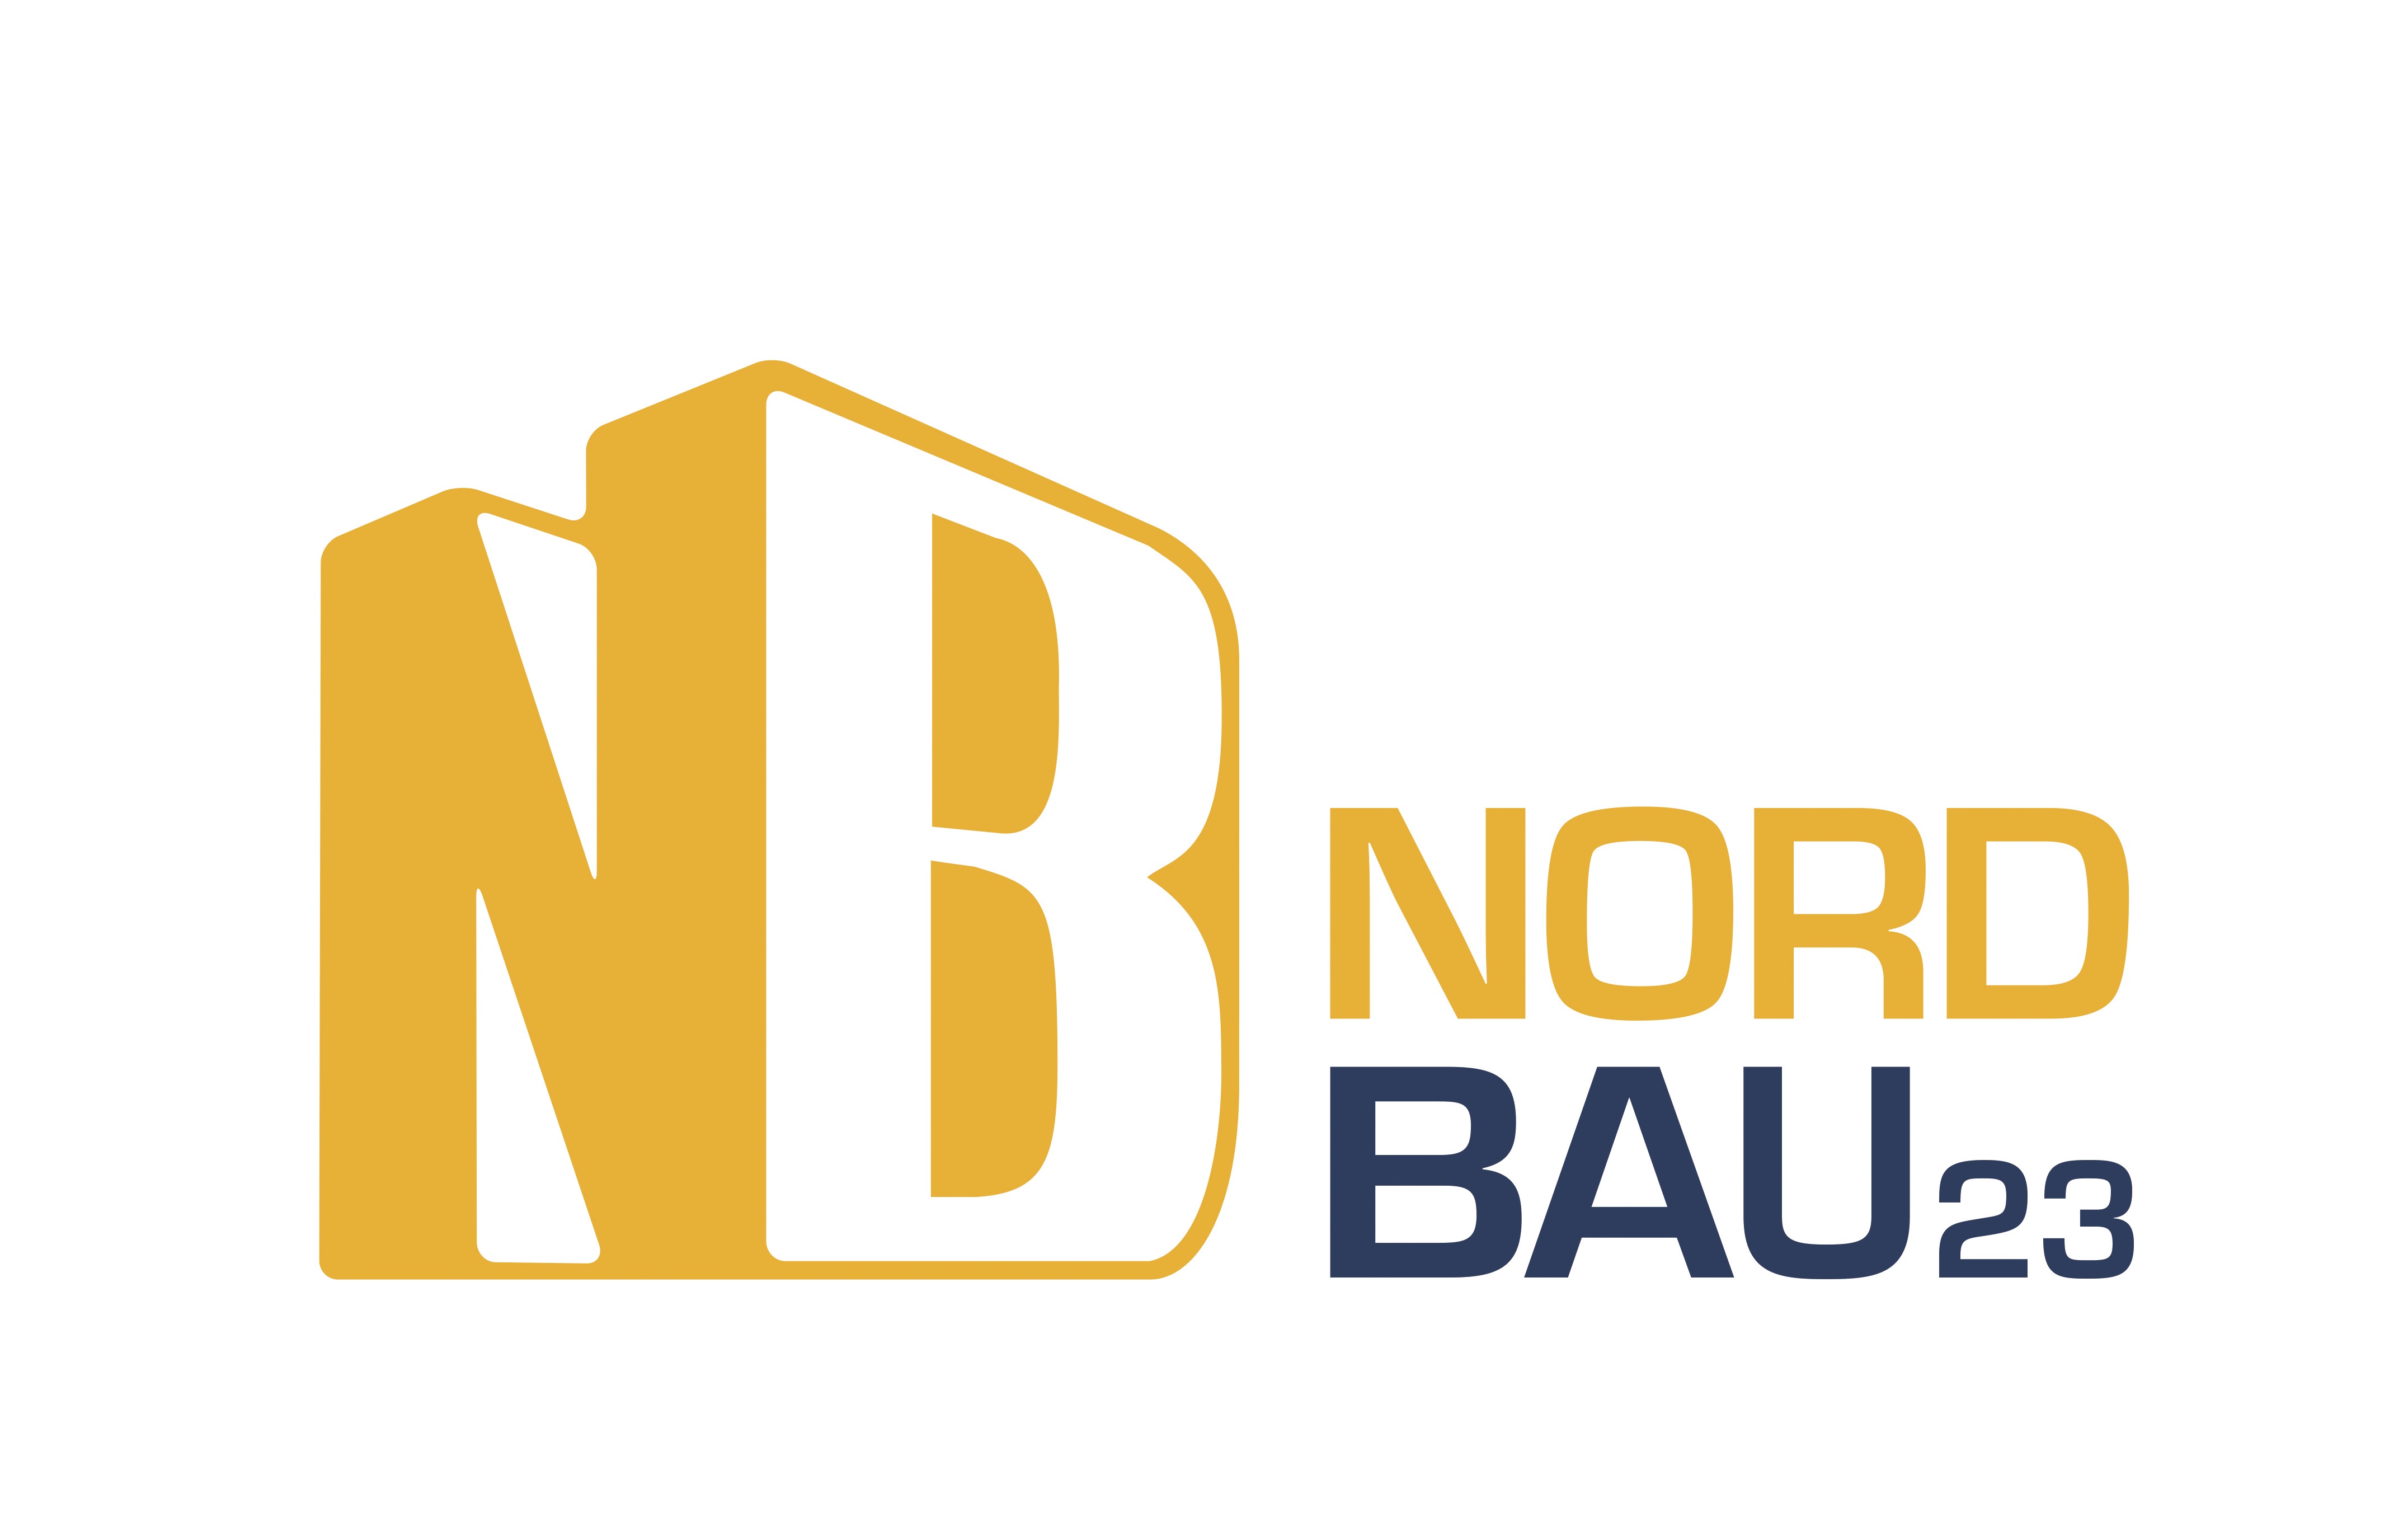 Die NordBau bleibt dran: Wichtige Themen der Baubranche aufgreifen und vertiefen.